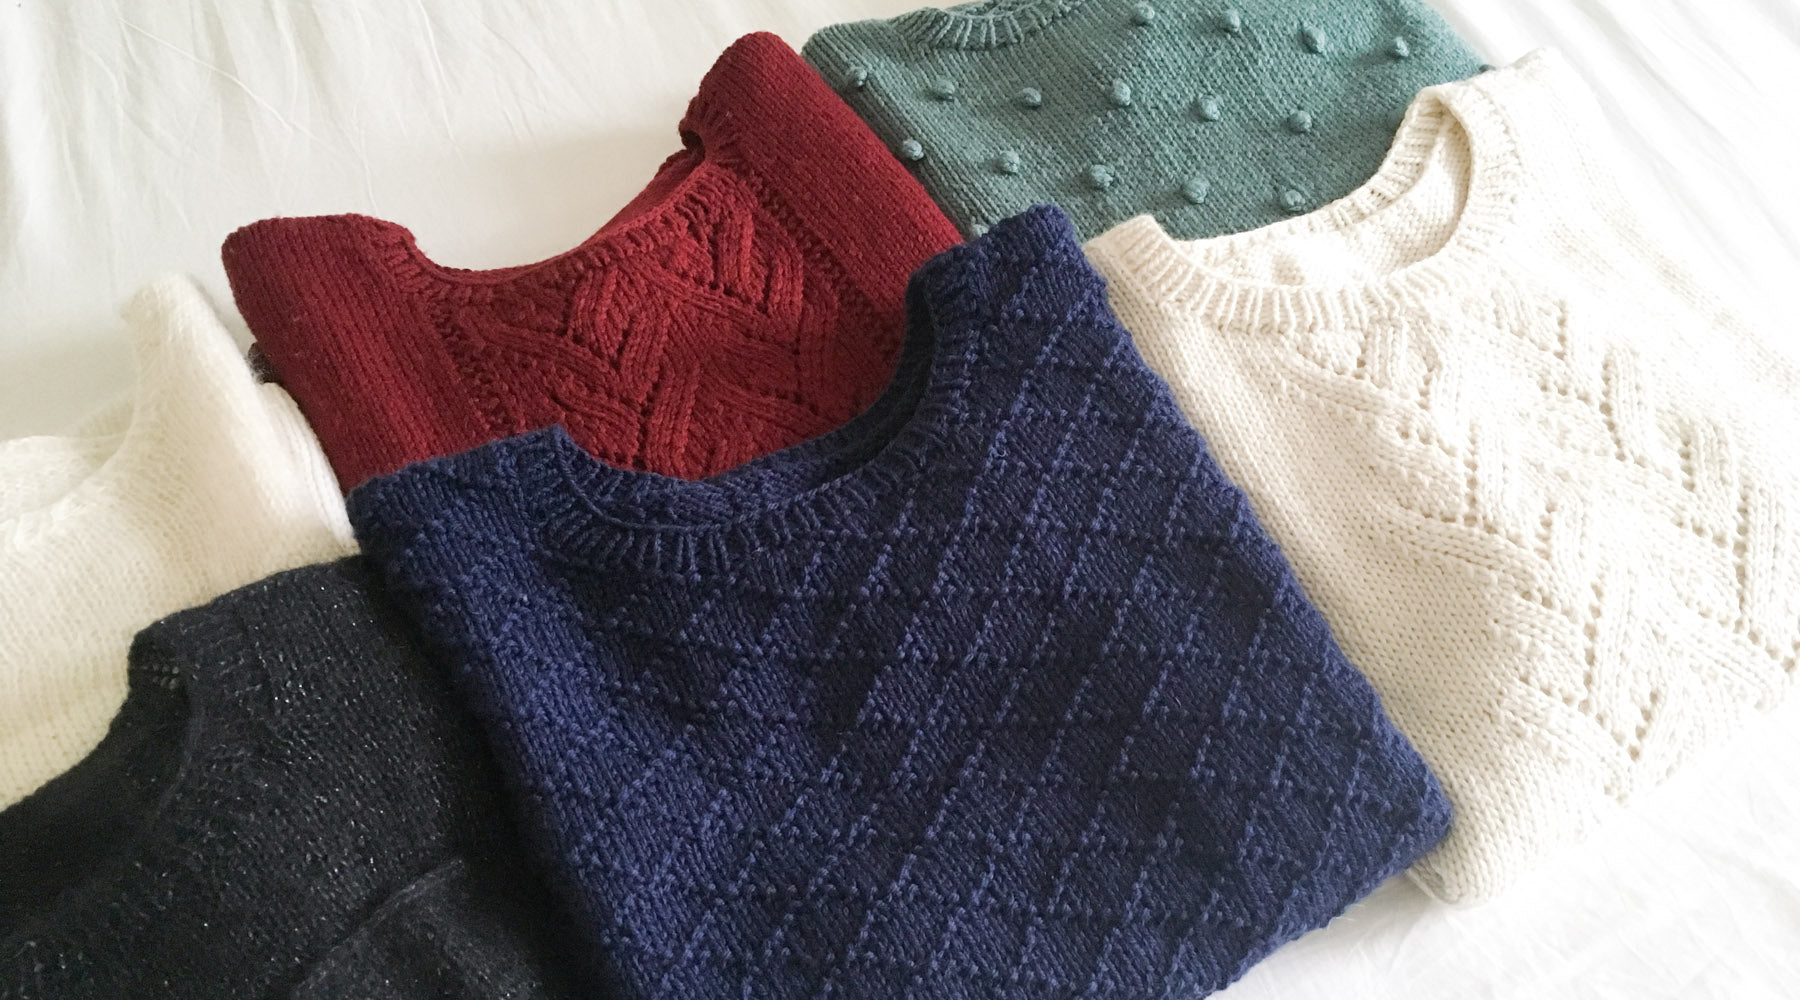 tricoter une collection de pulls basiques par Charlotte Auzou